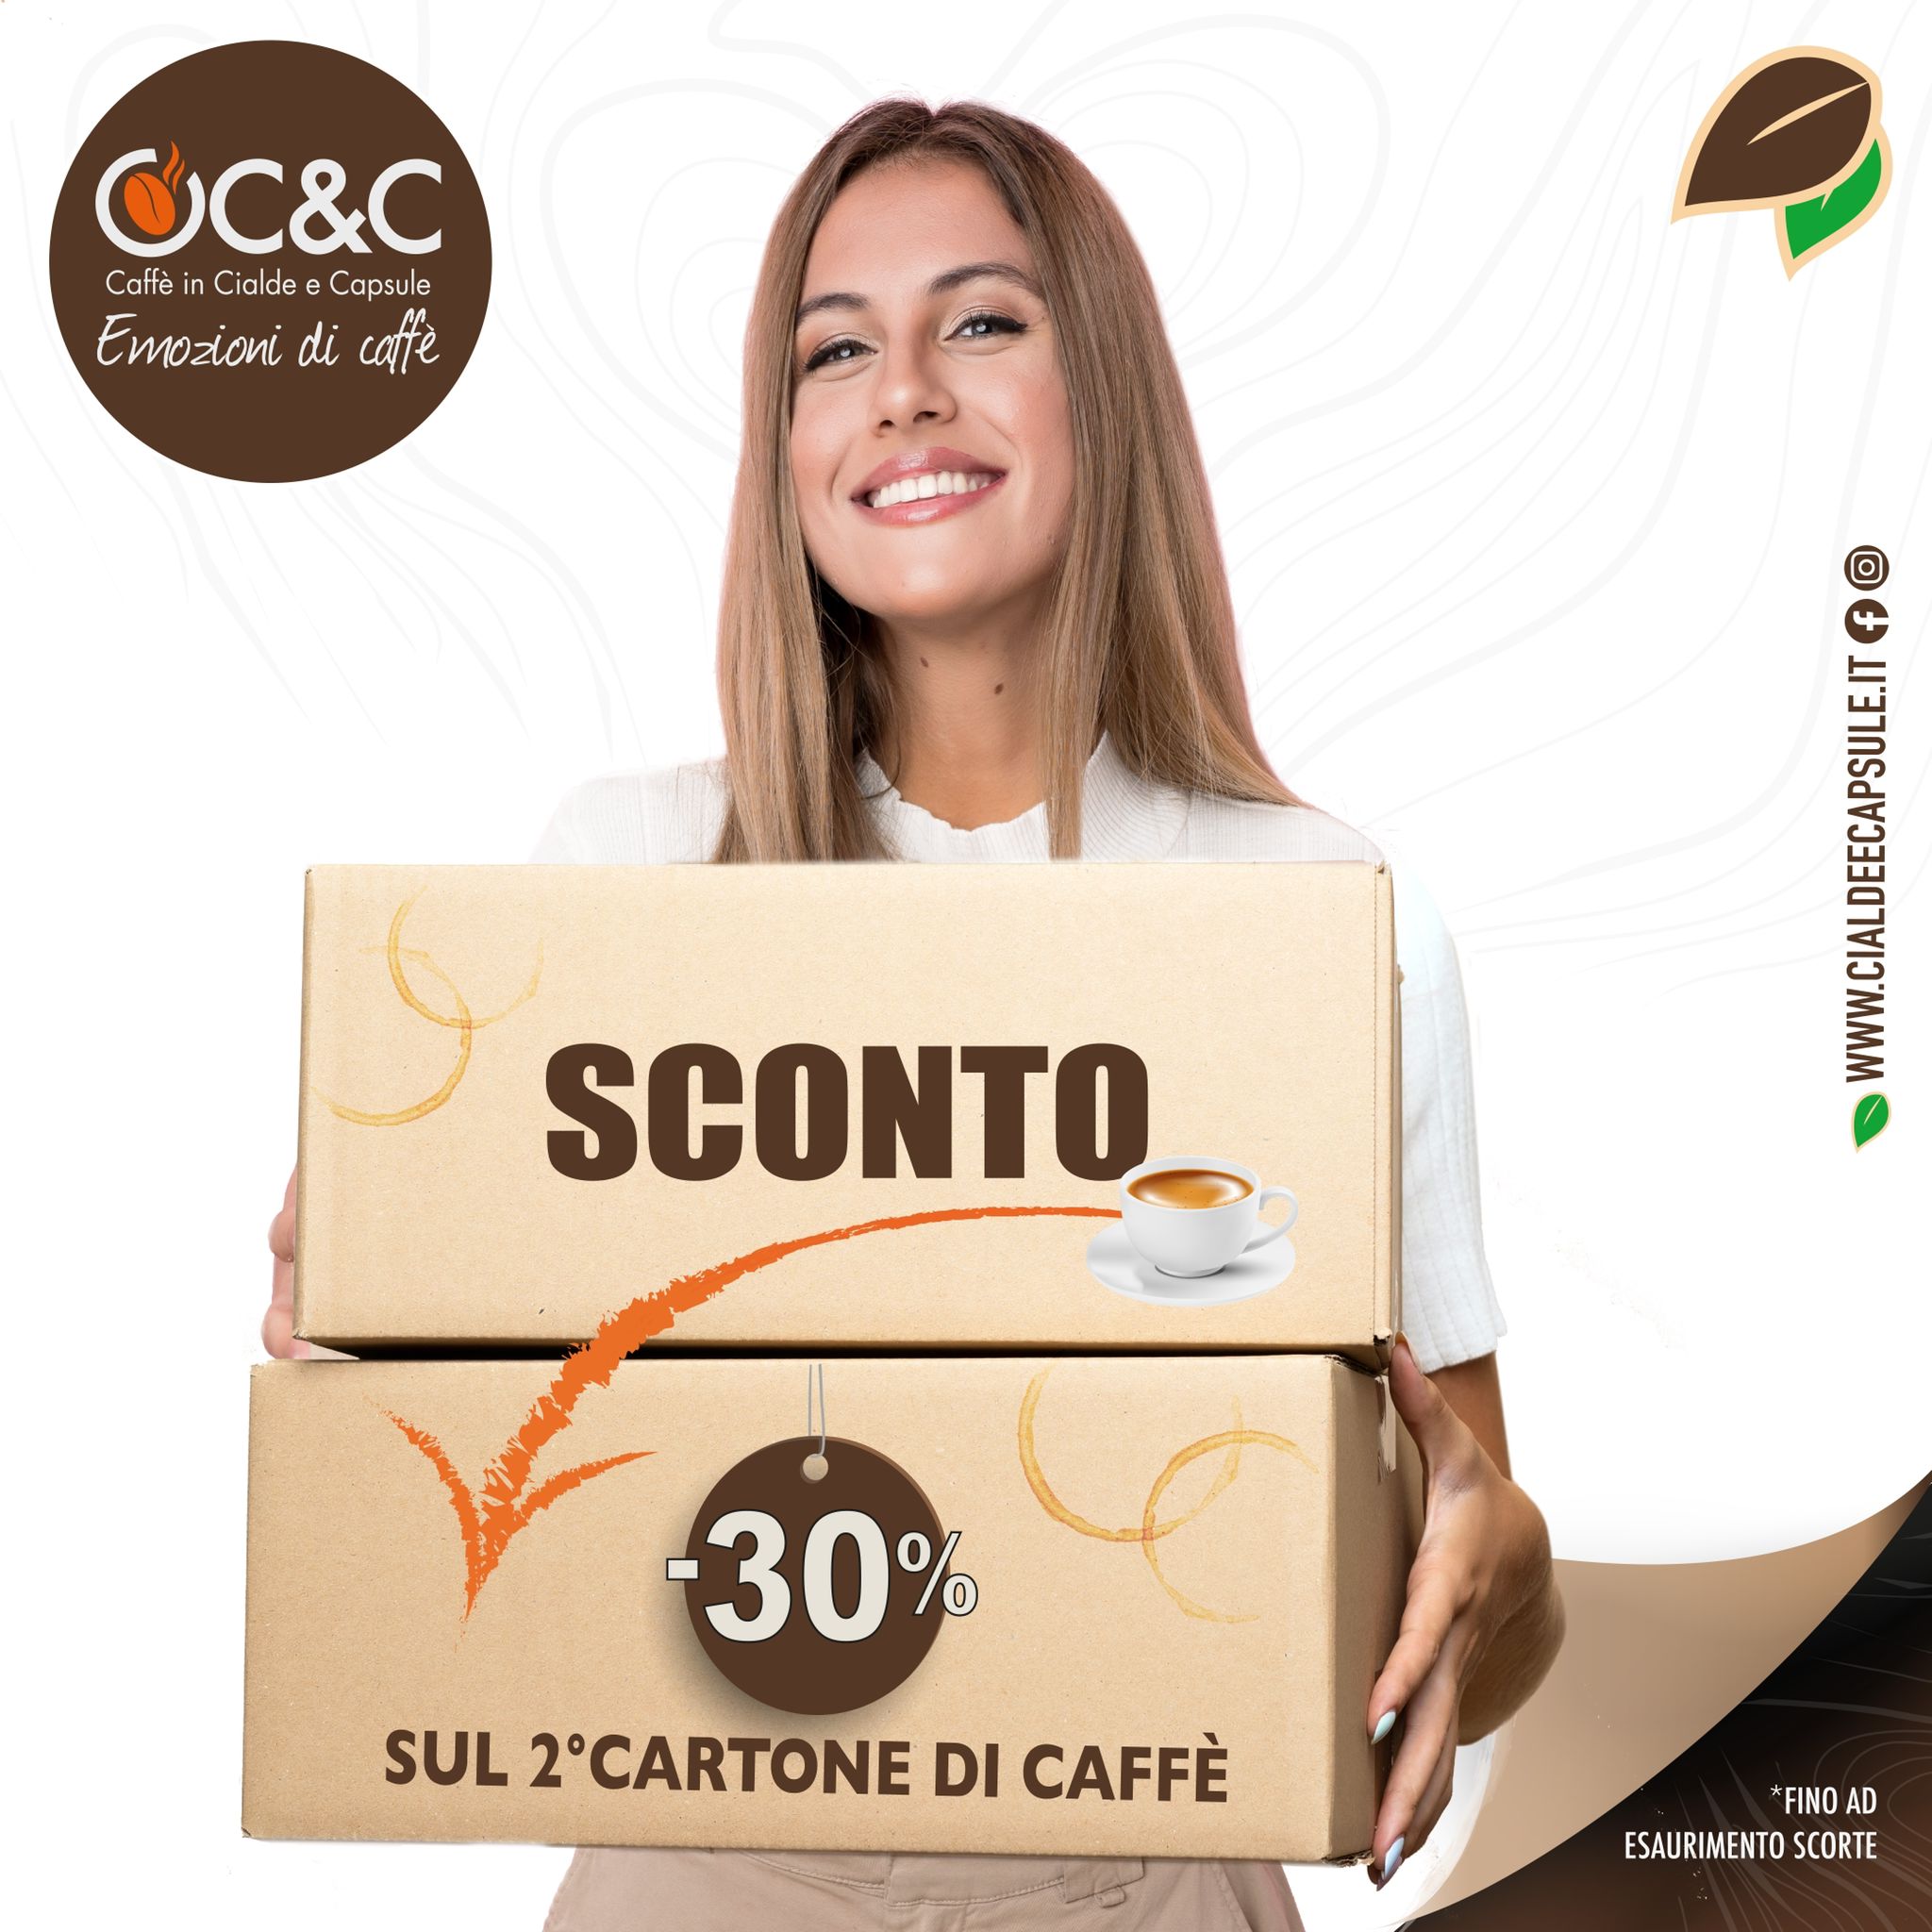 C&C Caffè in Cialde e Capsule